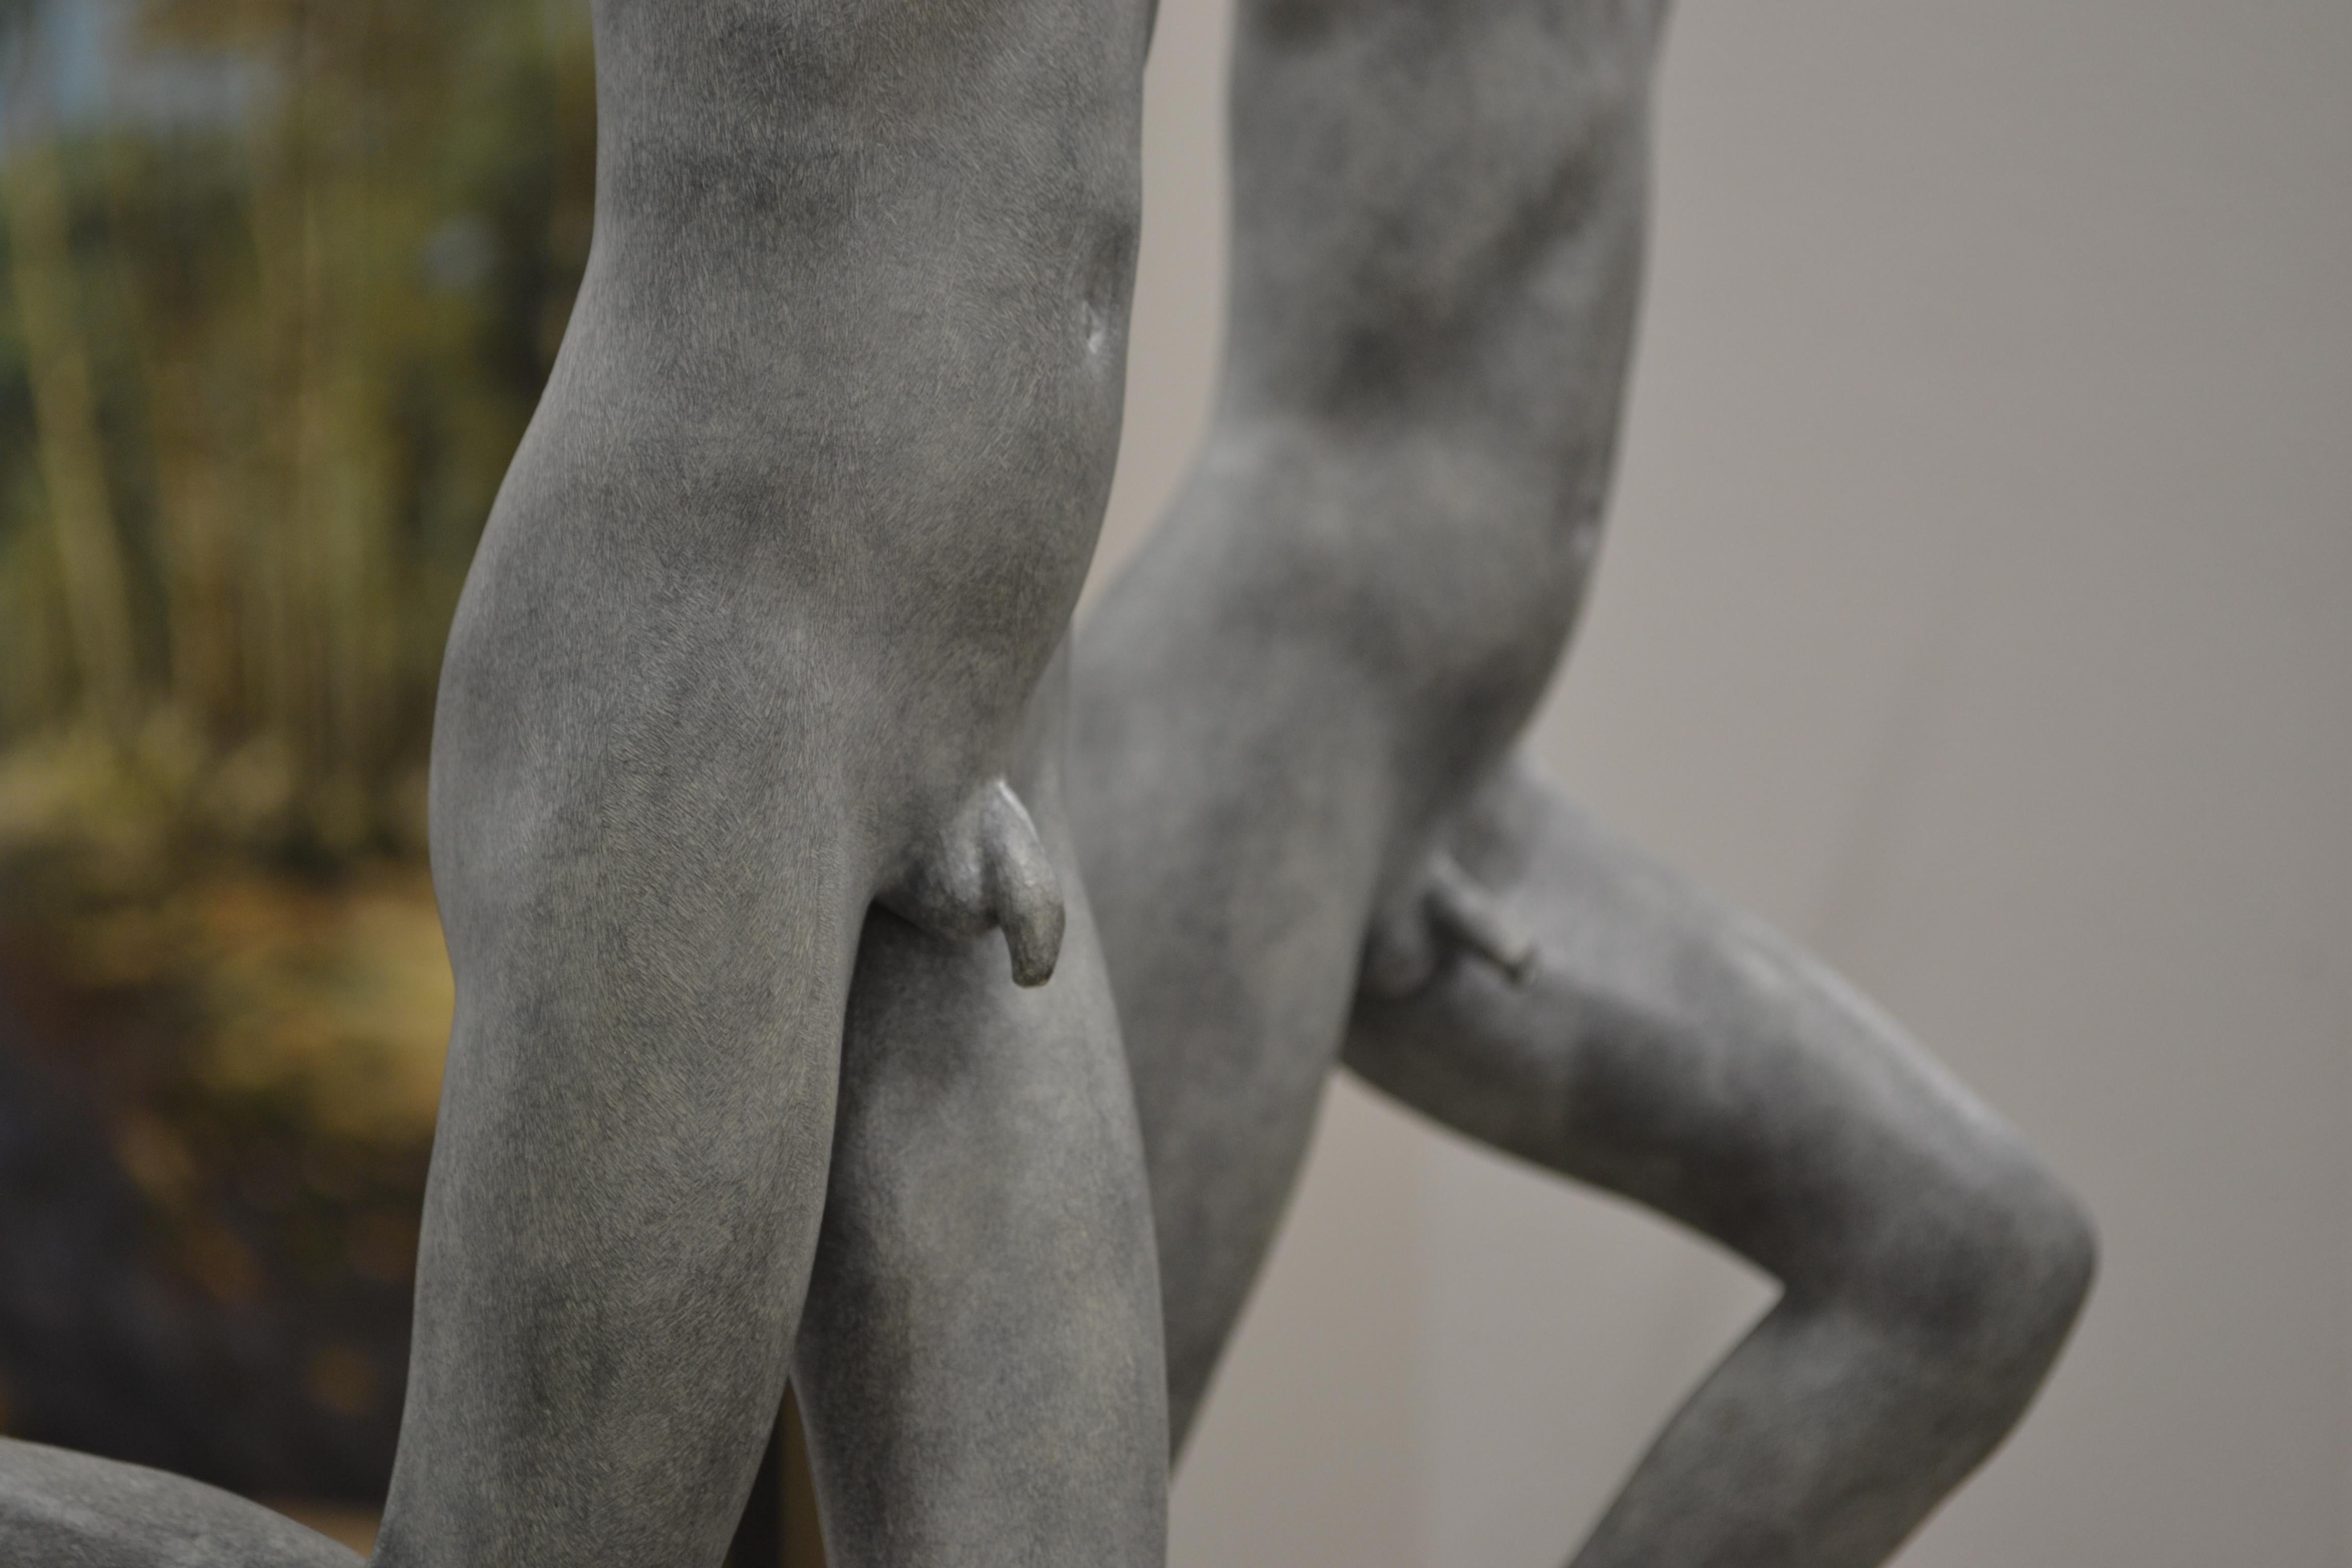 Cursus – zeitgenössische Bronzeskulptur zweier nackter laufender Jungen aus dem 21. Jahrhundert 4